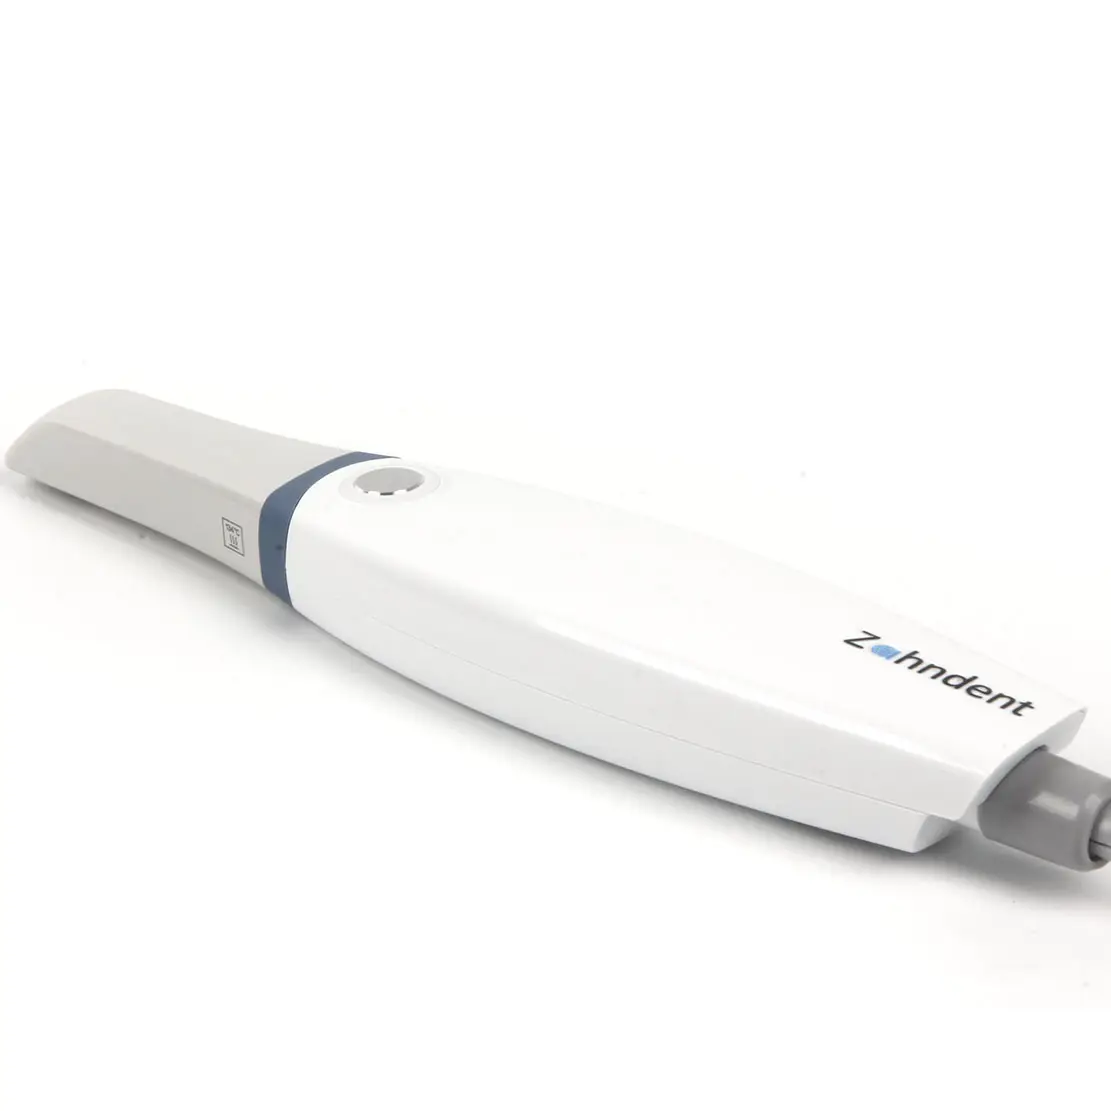 Zahndent 80mm/s velocidade de digitalização equipamento de imagem dentária scanner intraoral para clínica dentária